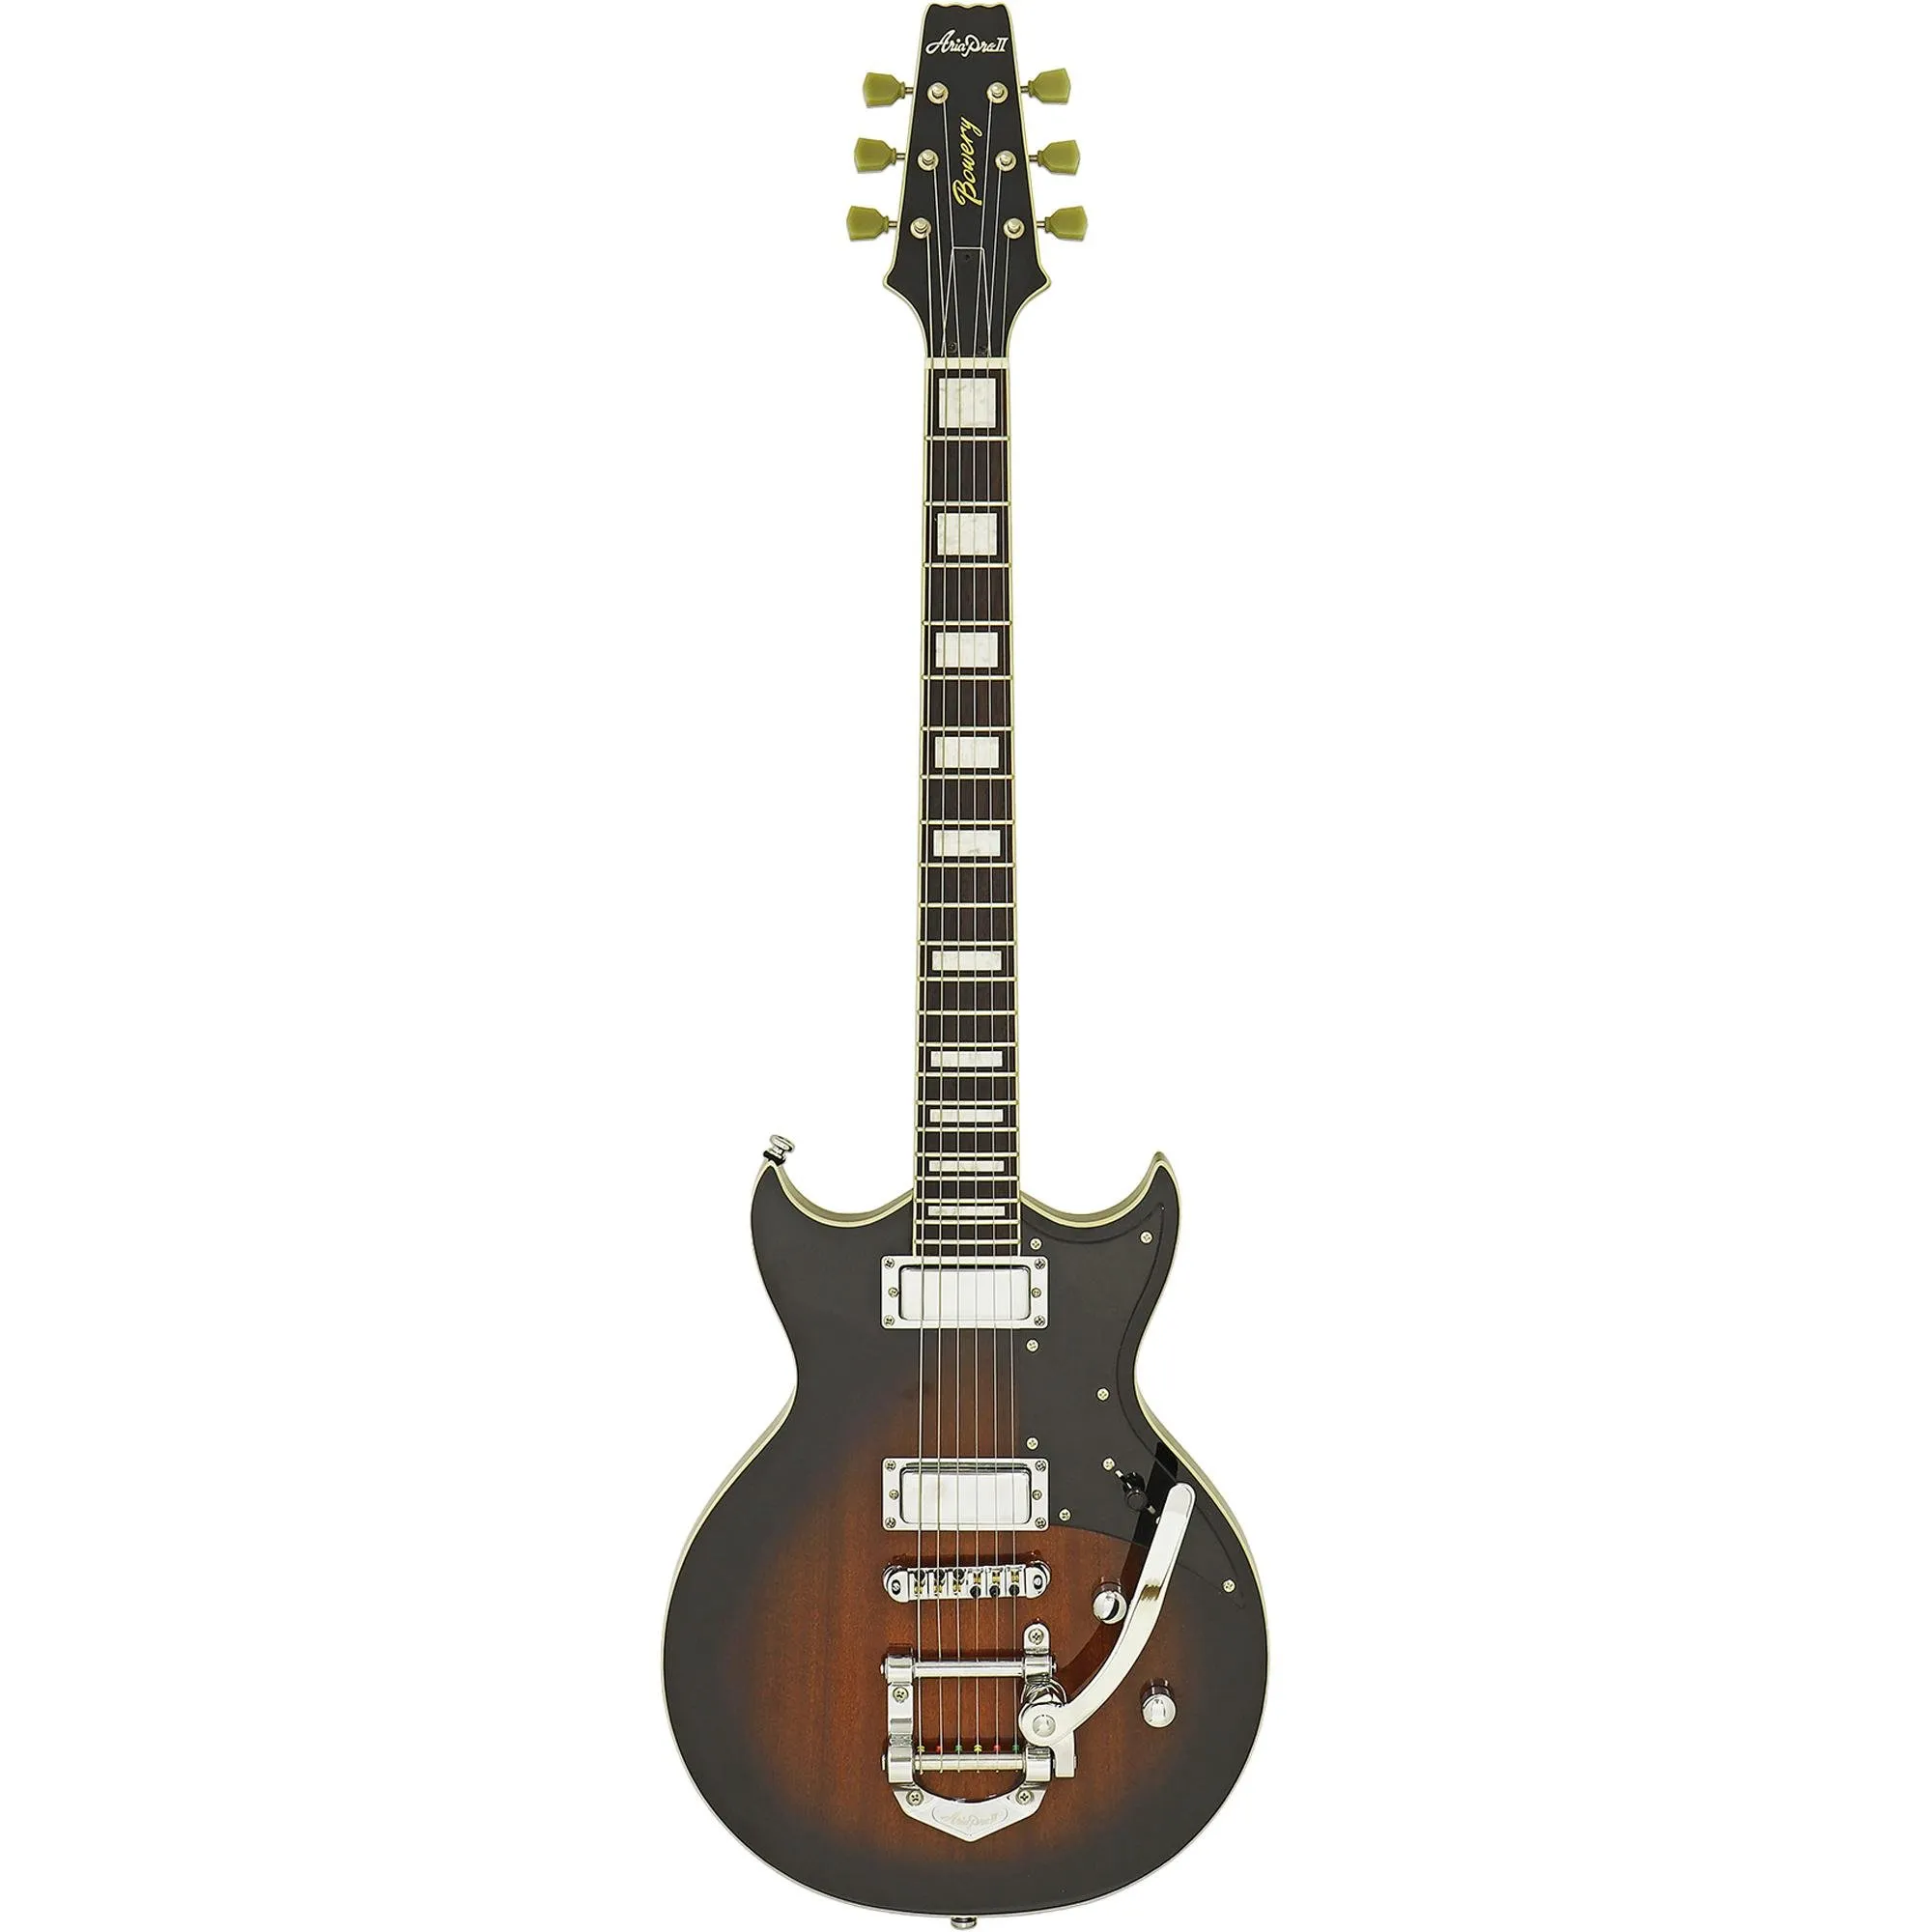 Guitarra Aria Pro II 212-MK2 Bowery Brown Sunburst por 5.054,00 à vista no boleto/pix ou parcele em até 12x sem juros. Compre na loja Mundomax!